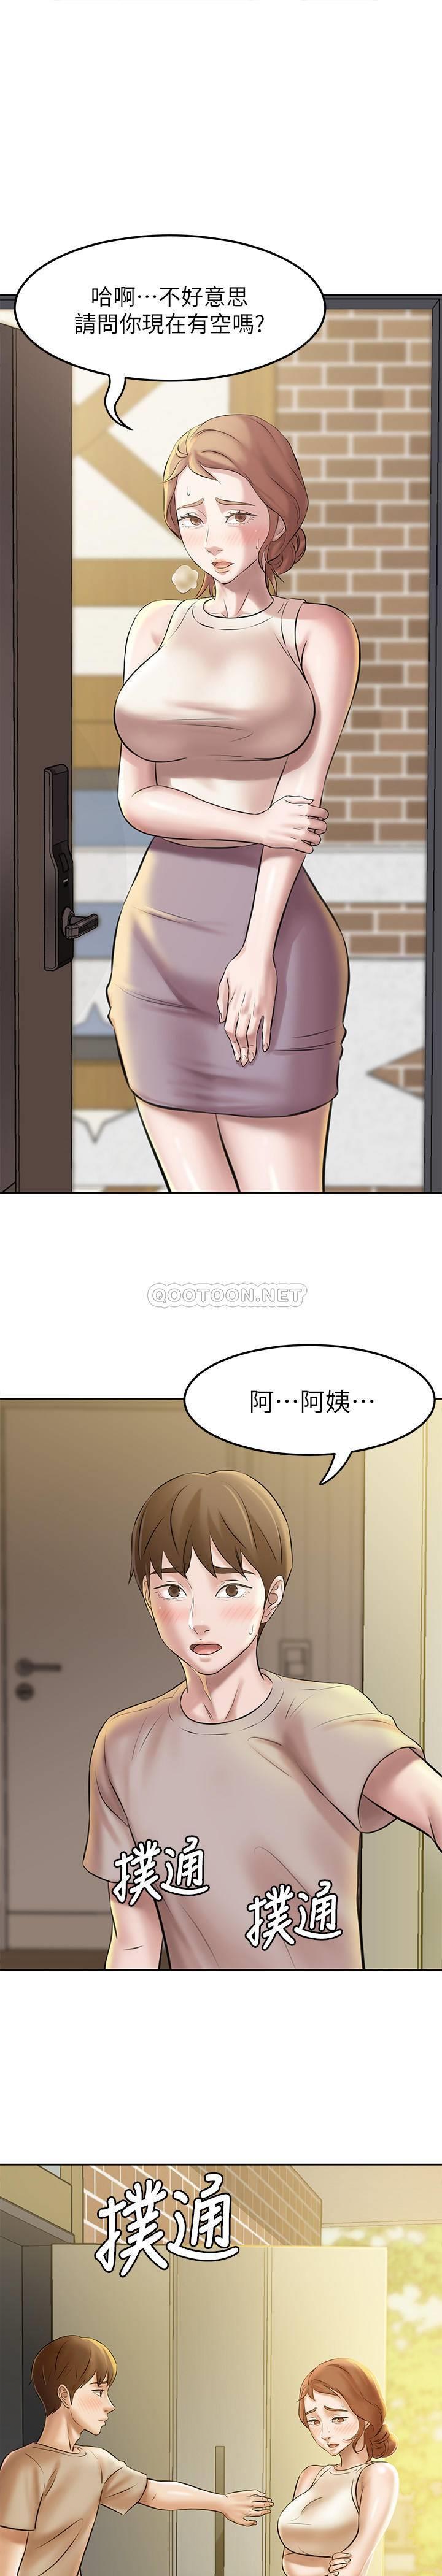 韩国污漫画 小褲褲筆記 第4话 - mō两下没关系吧? 1